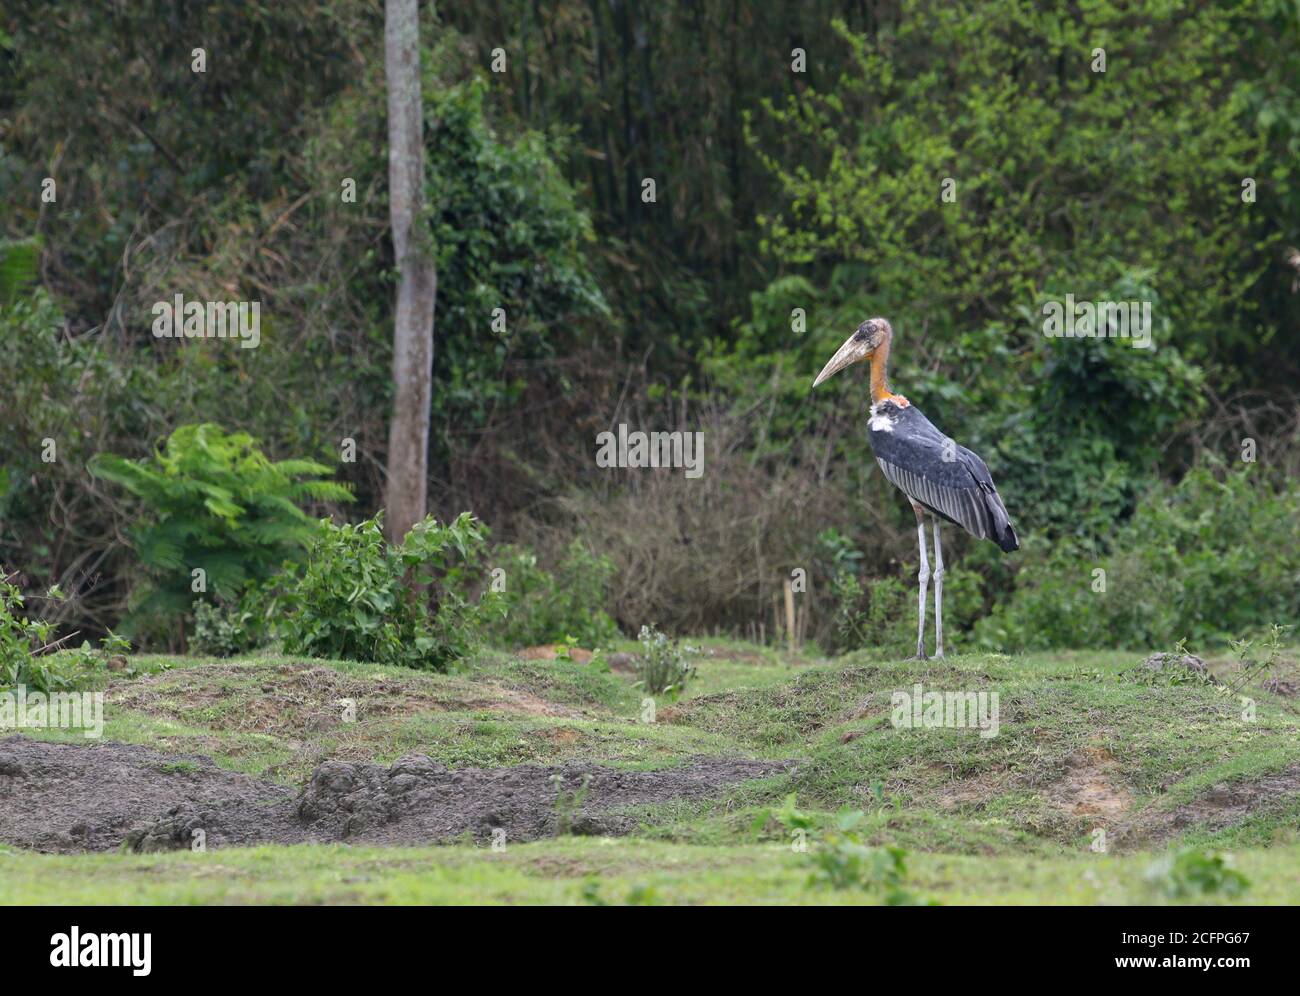 greater adjutant stork (Leptoptilos dubius), standing on forest edge looking alert for possible danger, India, Stock Photo